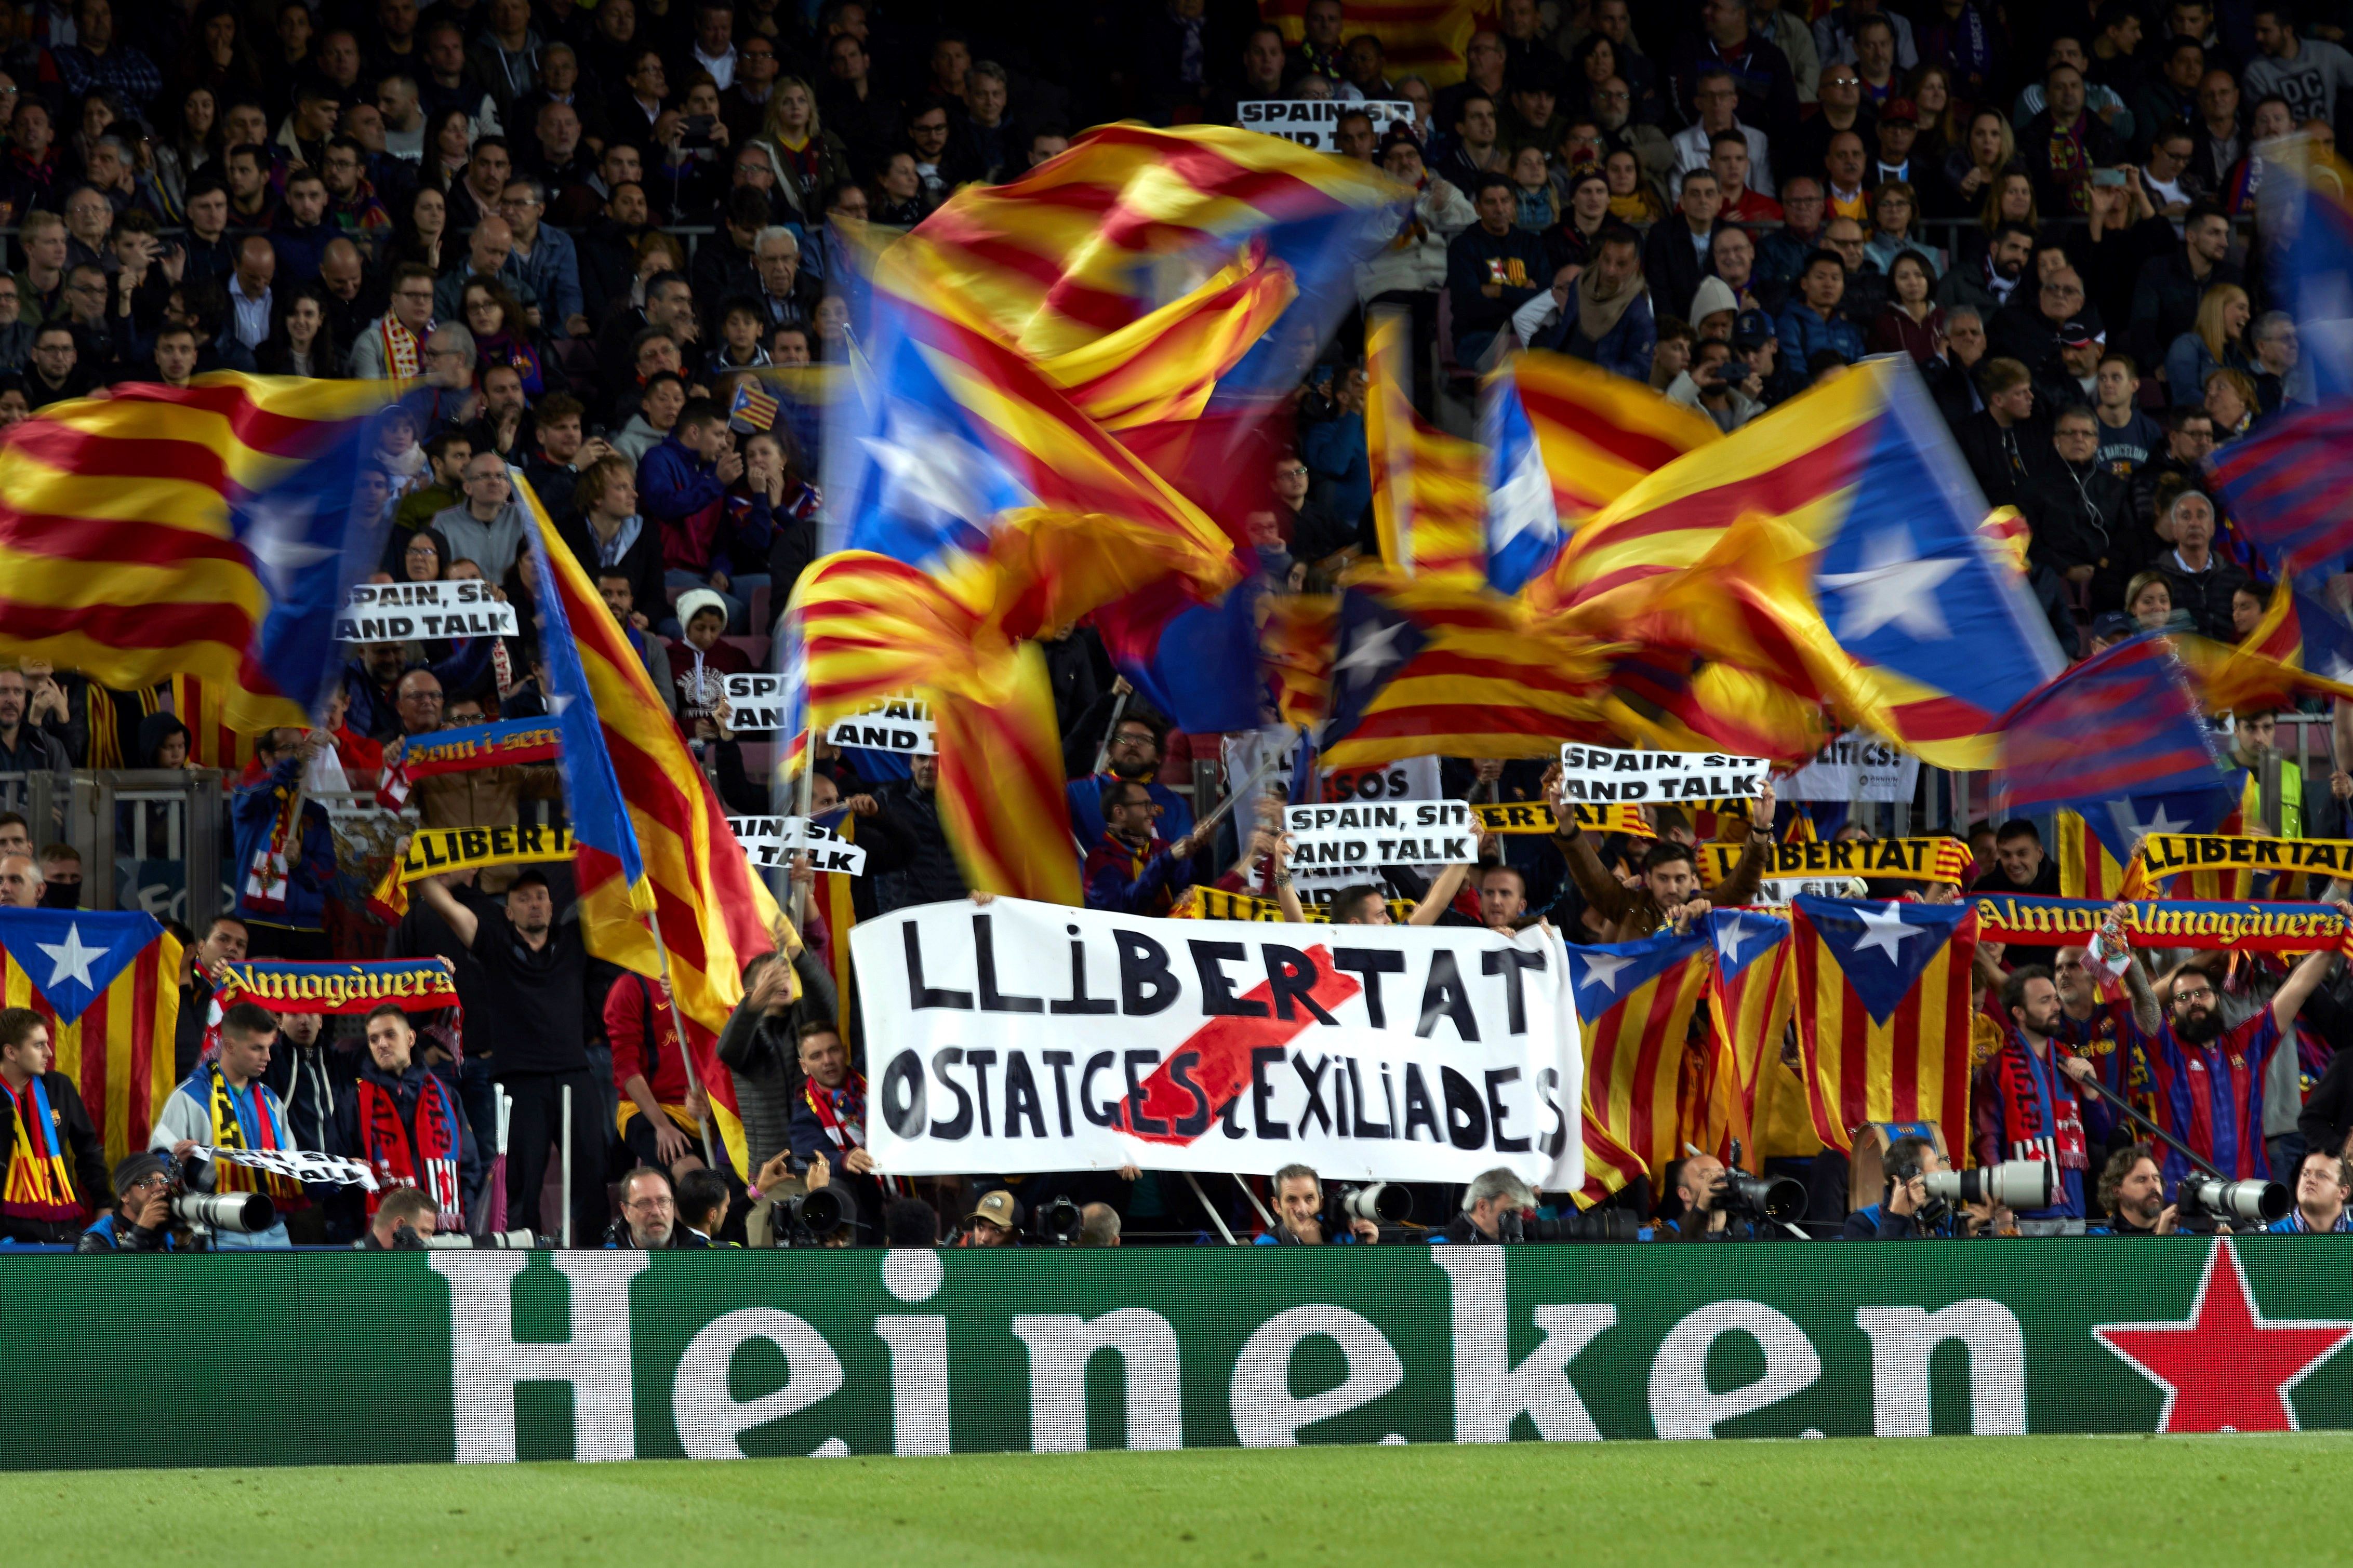 El Barça asegura que no ha tenido "ninguna comunicación con Tsunami Democràtic"